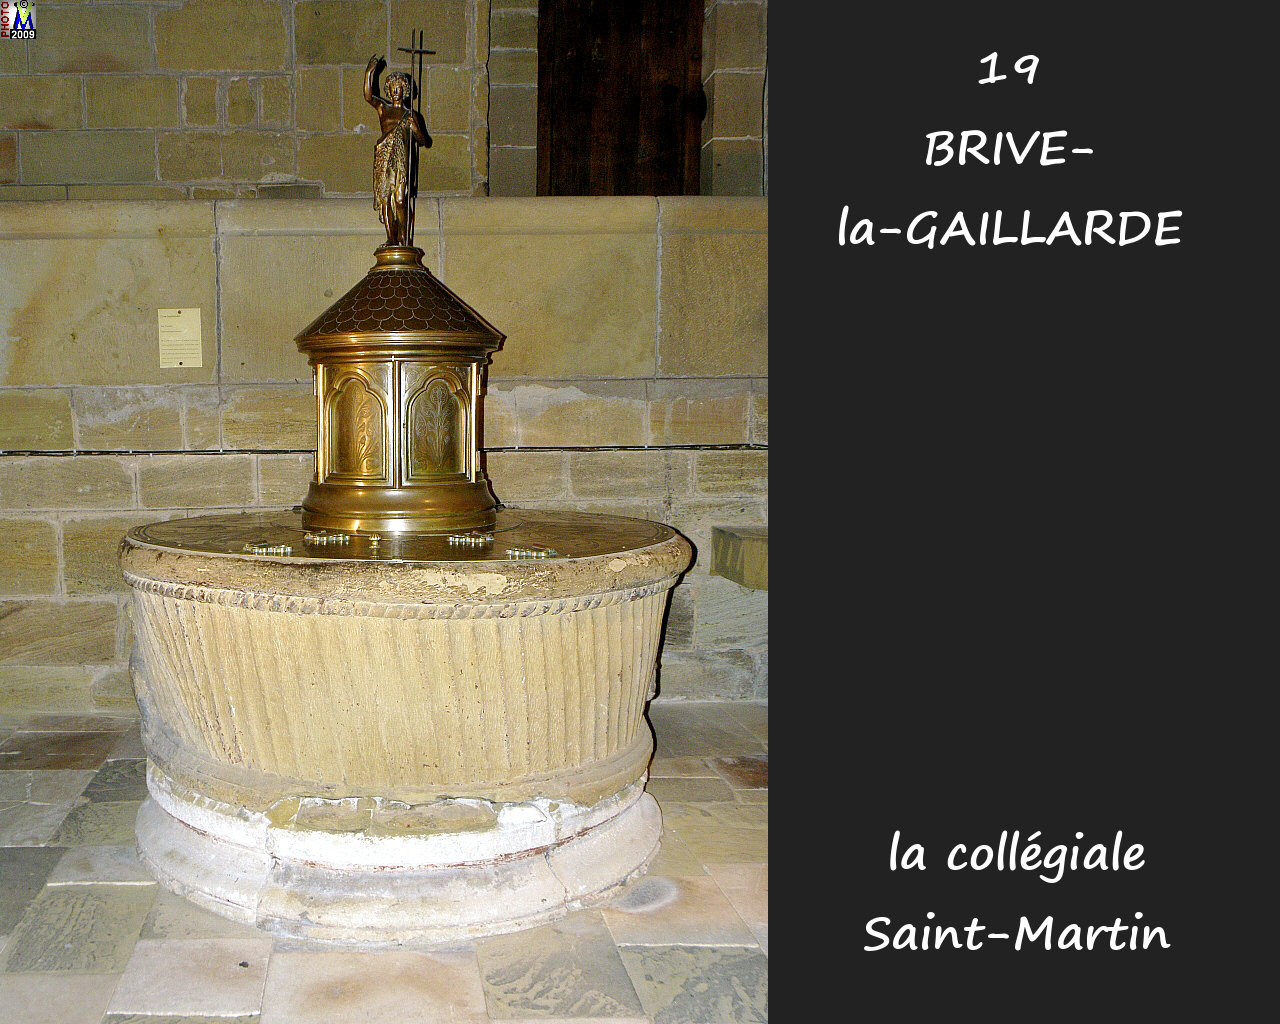 19BRIVE-GAILLARDE_collegialeSM_240.jpg